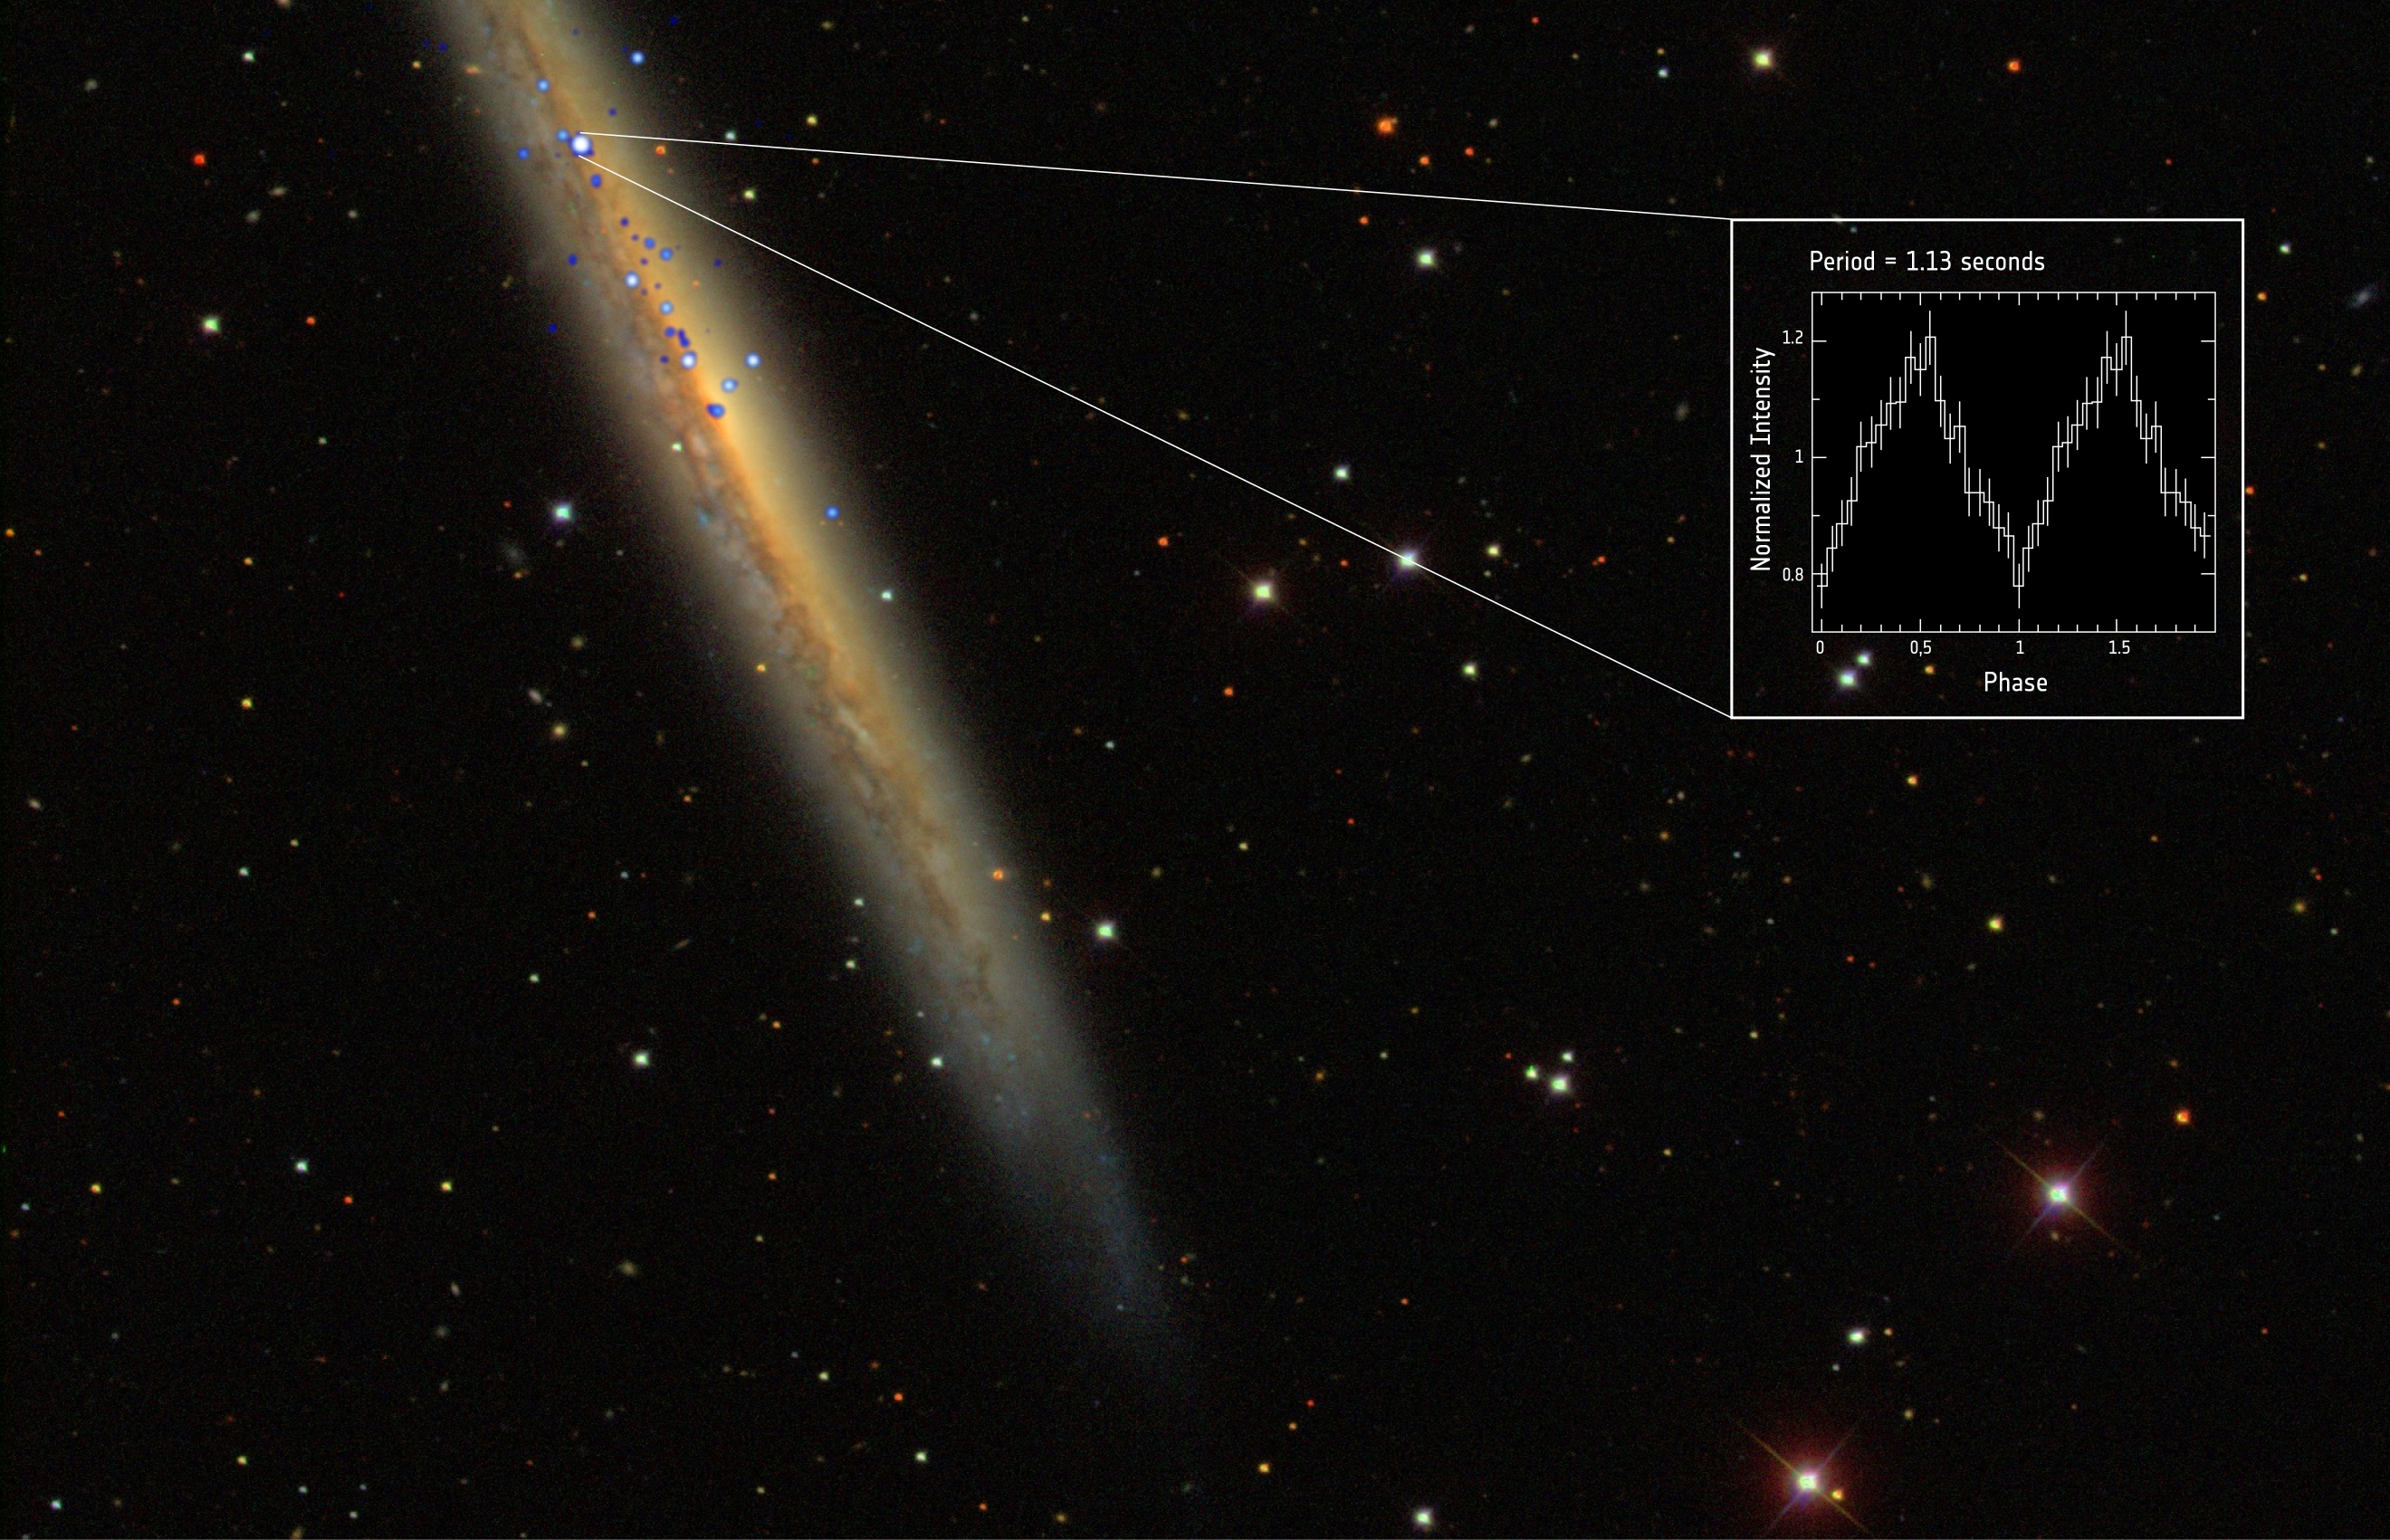 Rekordowy pulsar w galaktyce spiralnej NGC 5907, zwanej również Galaktyką Drzazga czy Galaktyką Krawędź Noża. Zdjęcie łączy obrazy w paśmie rentgenowskim (biały i niebieski kolor, wykonane przez ESA i NASA) oraz w zakresie widzialnym (galaktyka i otocznie, dane z SDSS).